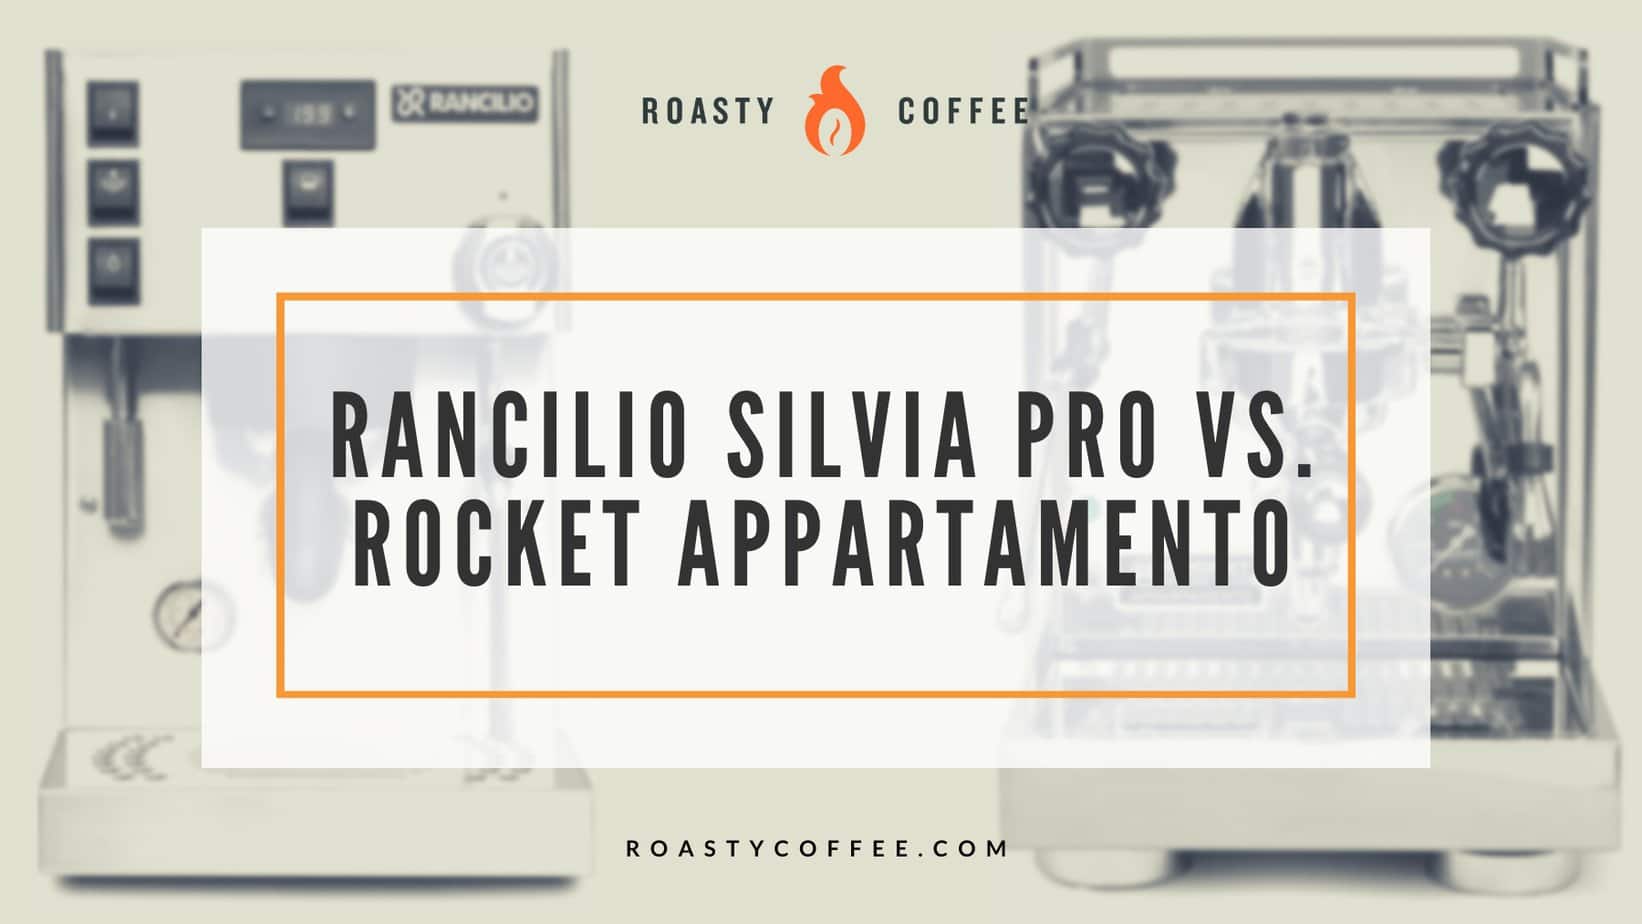 Rancilio Silvia Pro vs Rocket Appartamento